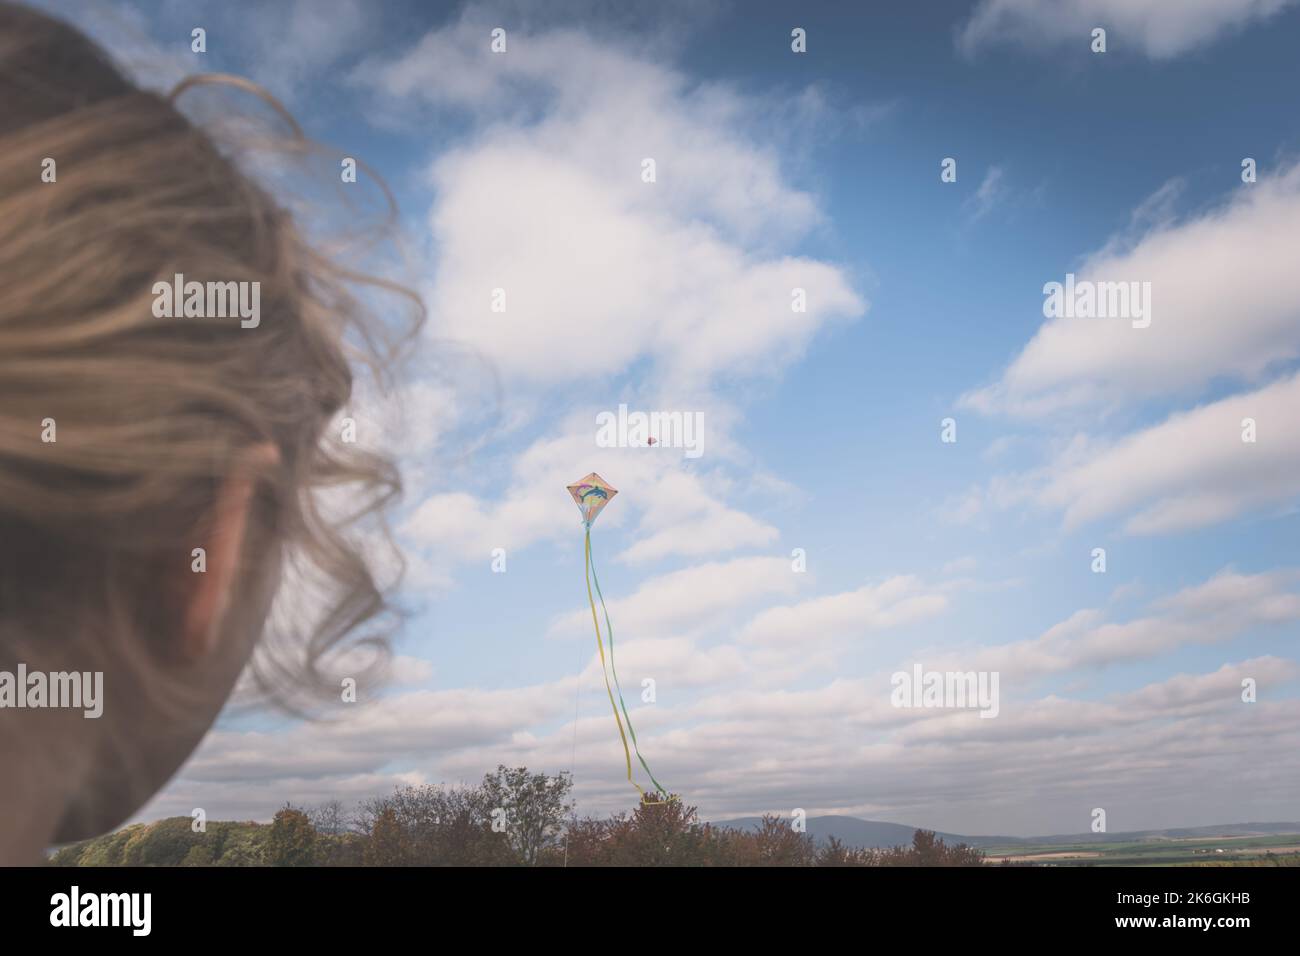 gros plan de filles tête vue arrière gérant un cerf-volant dans le ciel Banque D'Images